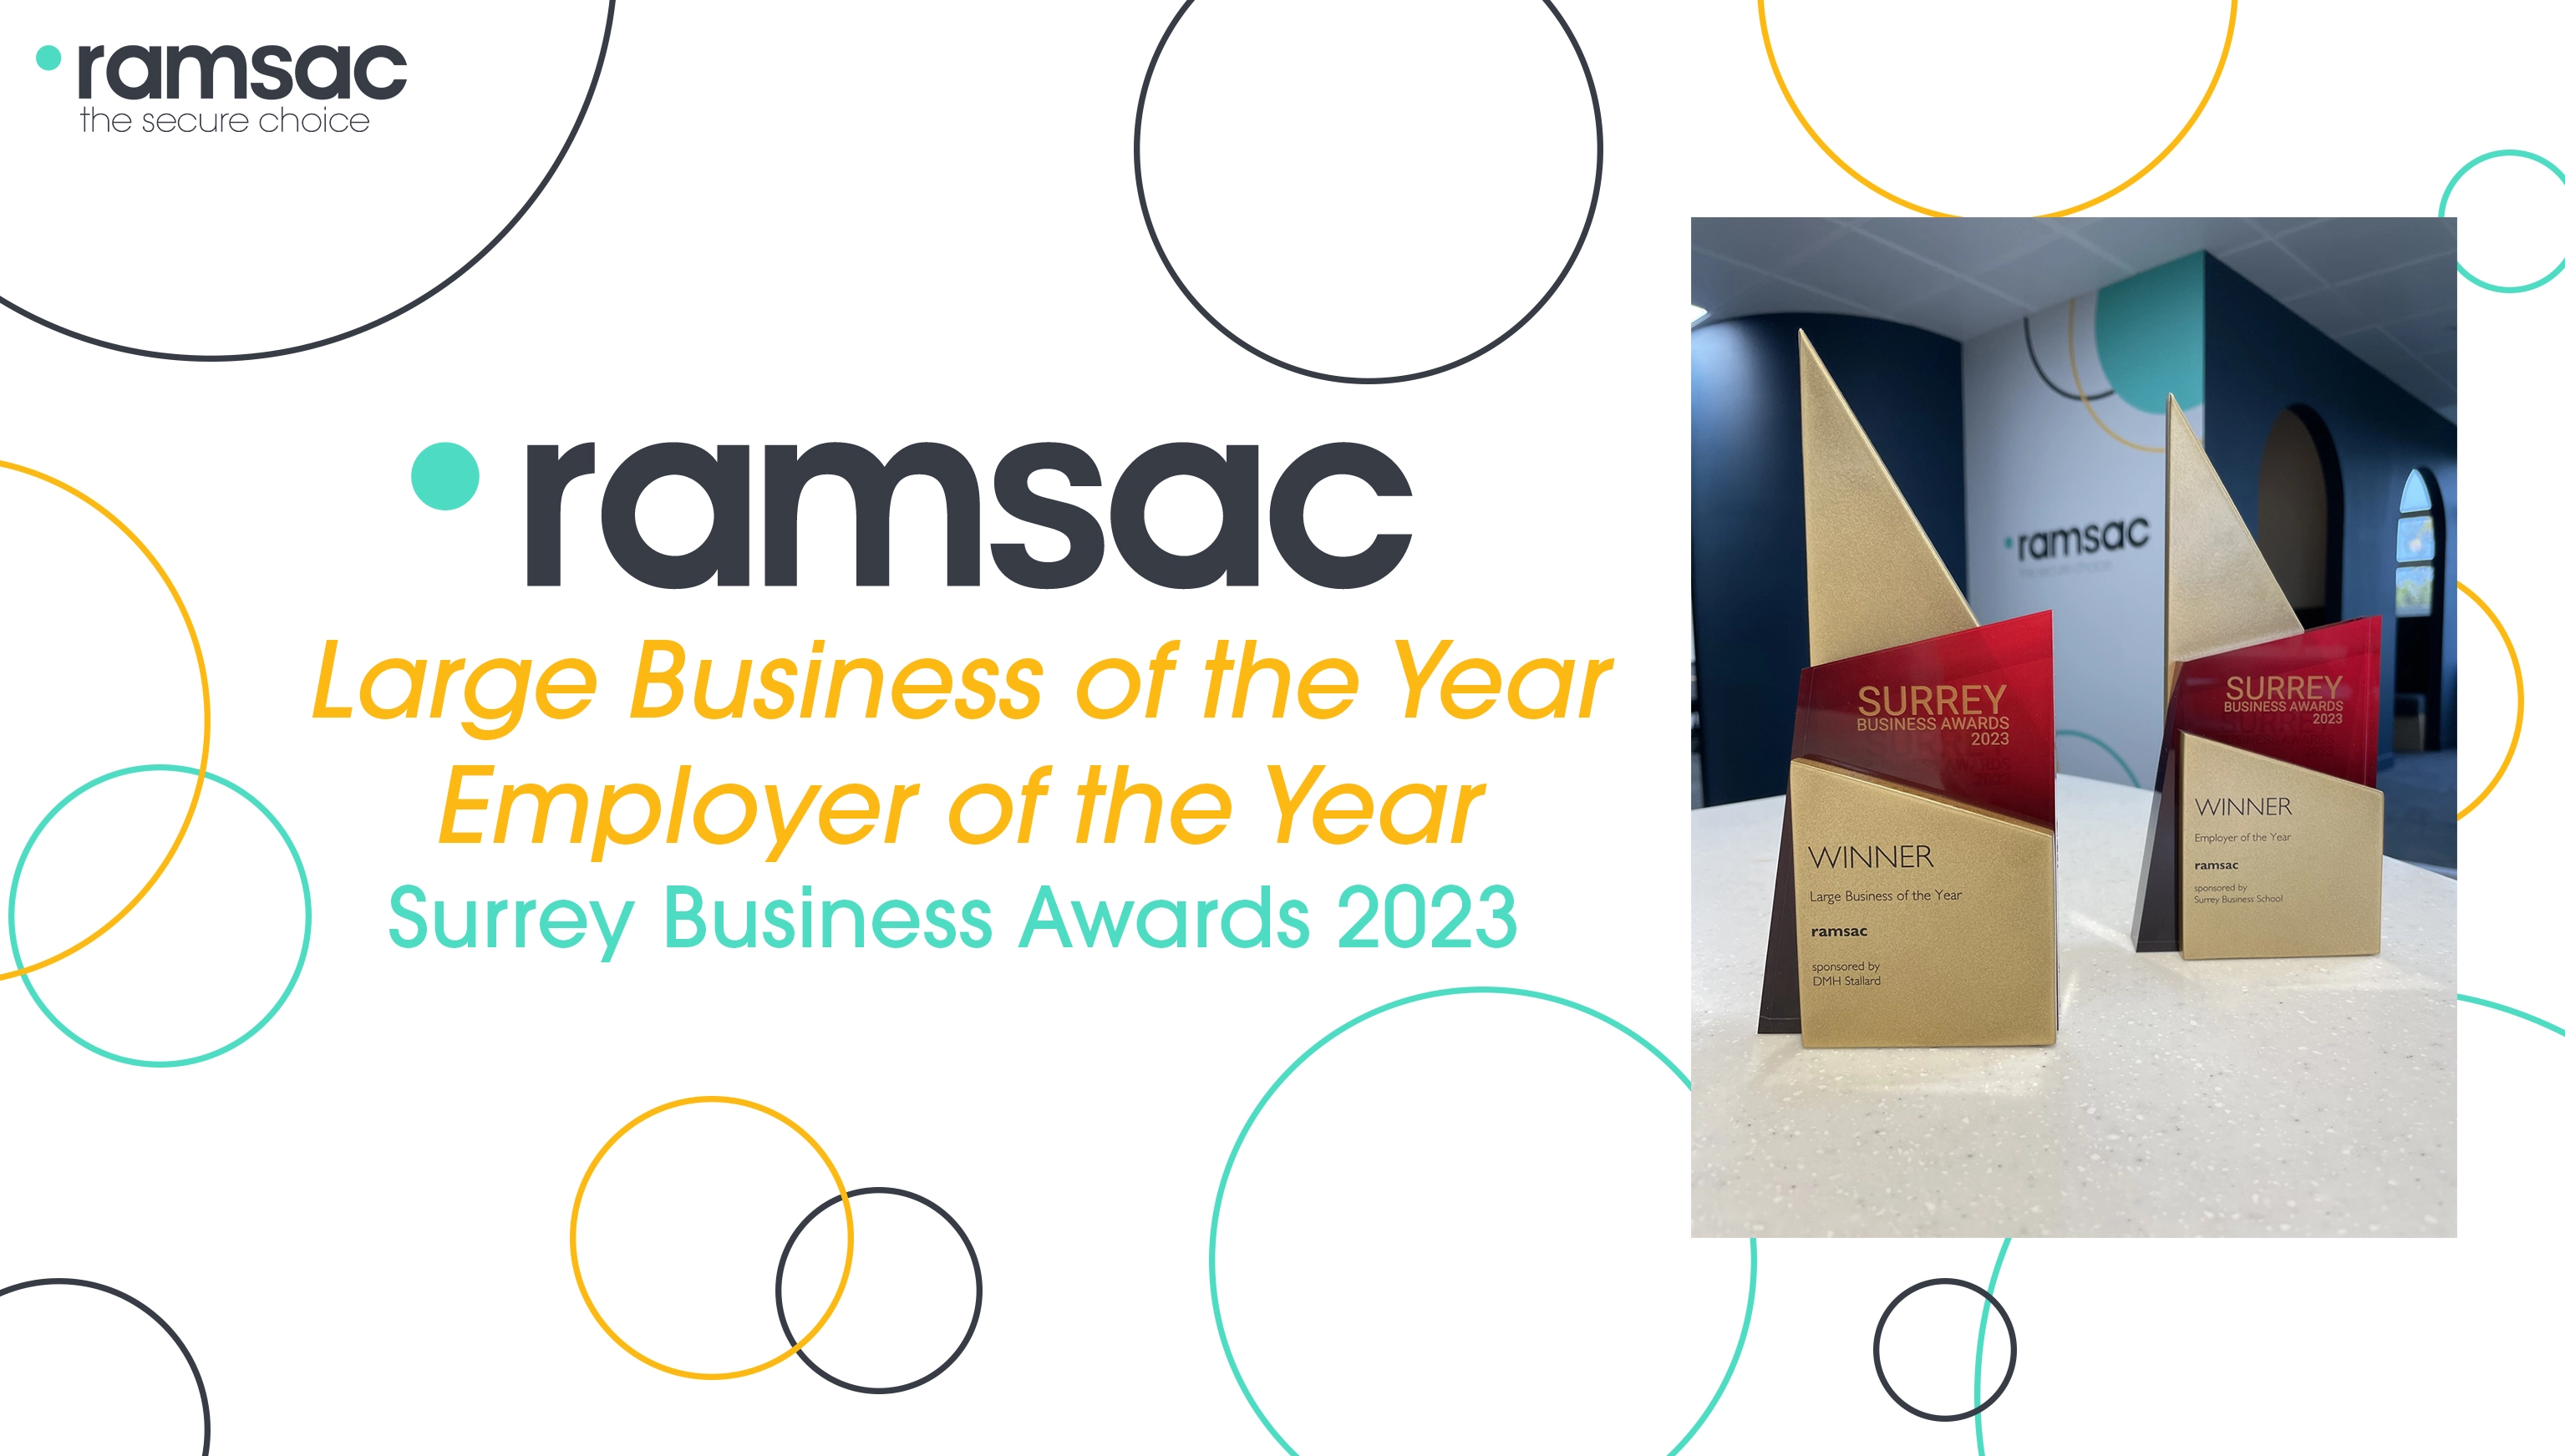 ramsac wins double awards at Surrey Business Awards 2023